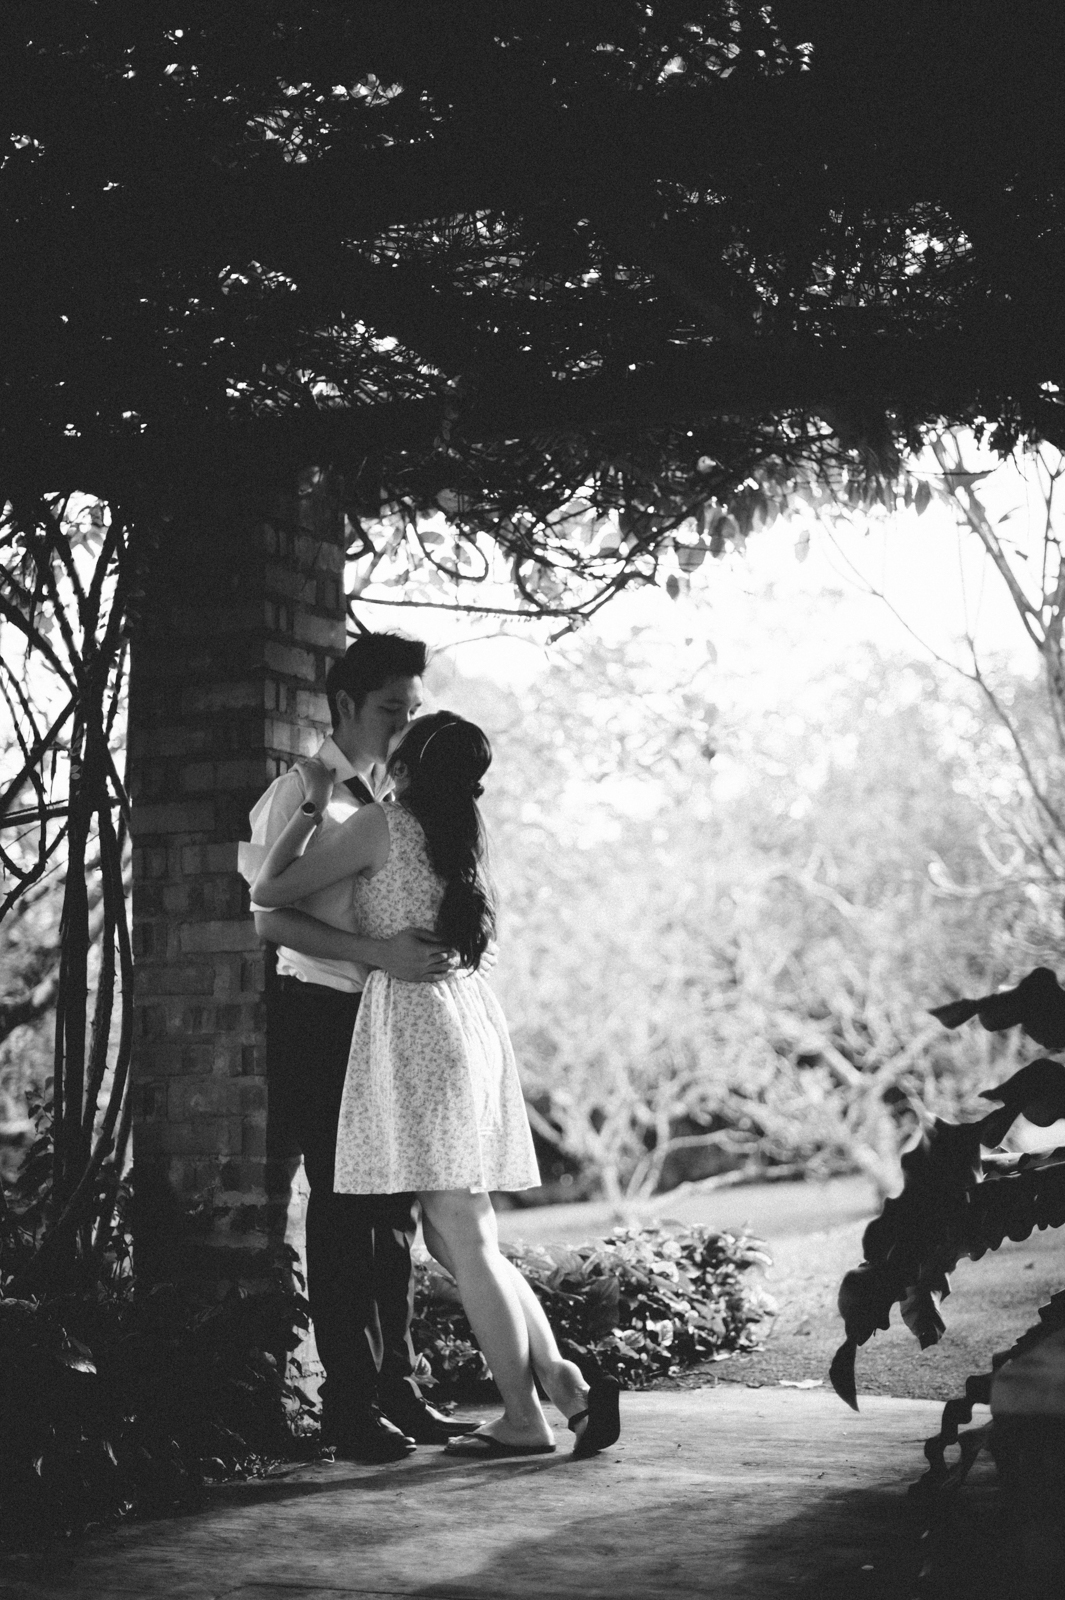 Matthew & Felicia’s pre-wedding shoot